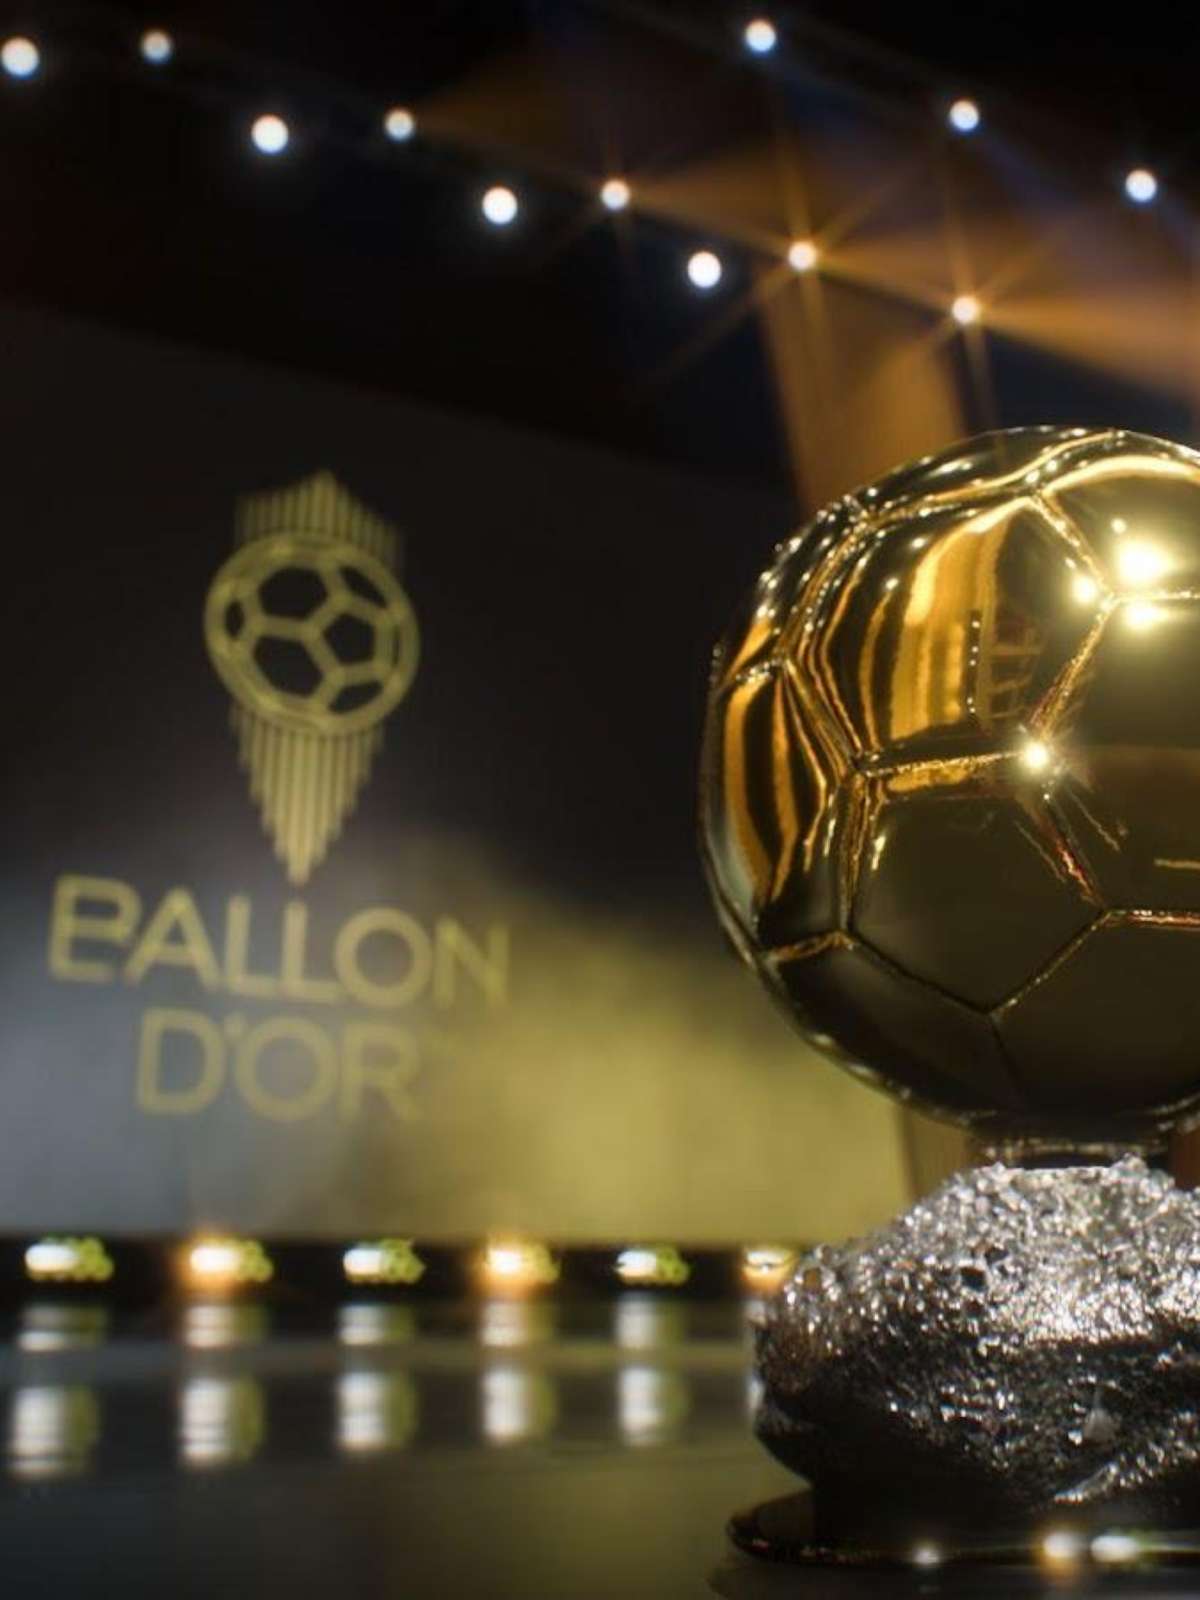 EA Sports FC anuncia parceria com Bola de Ouro